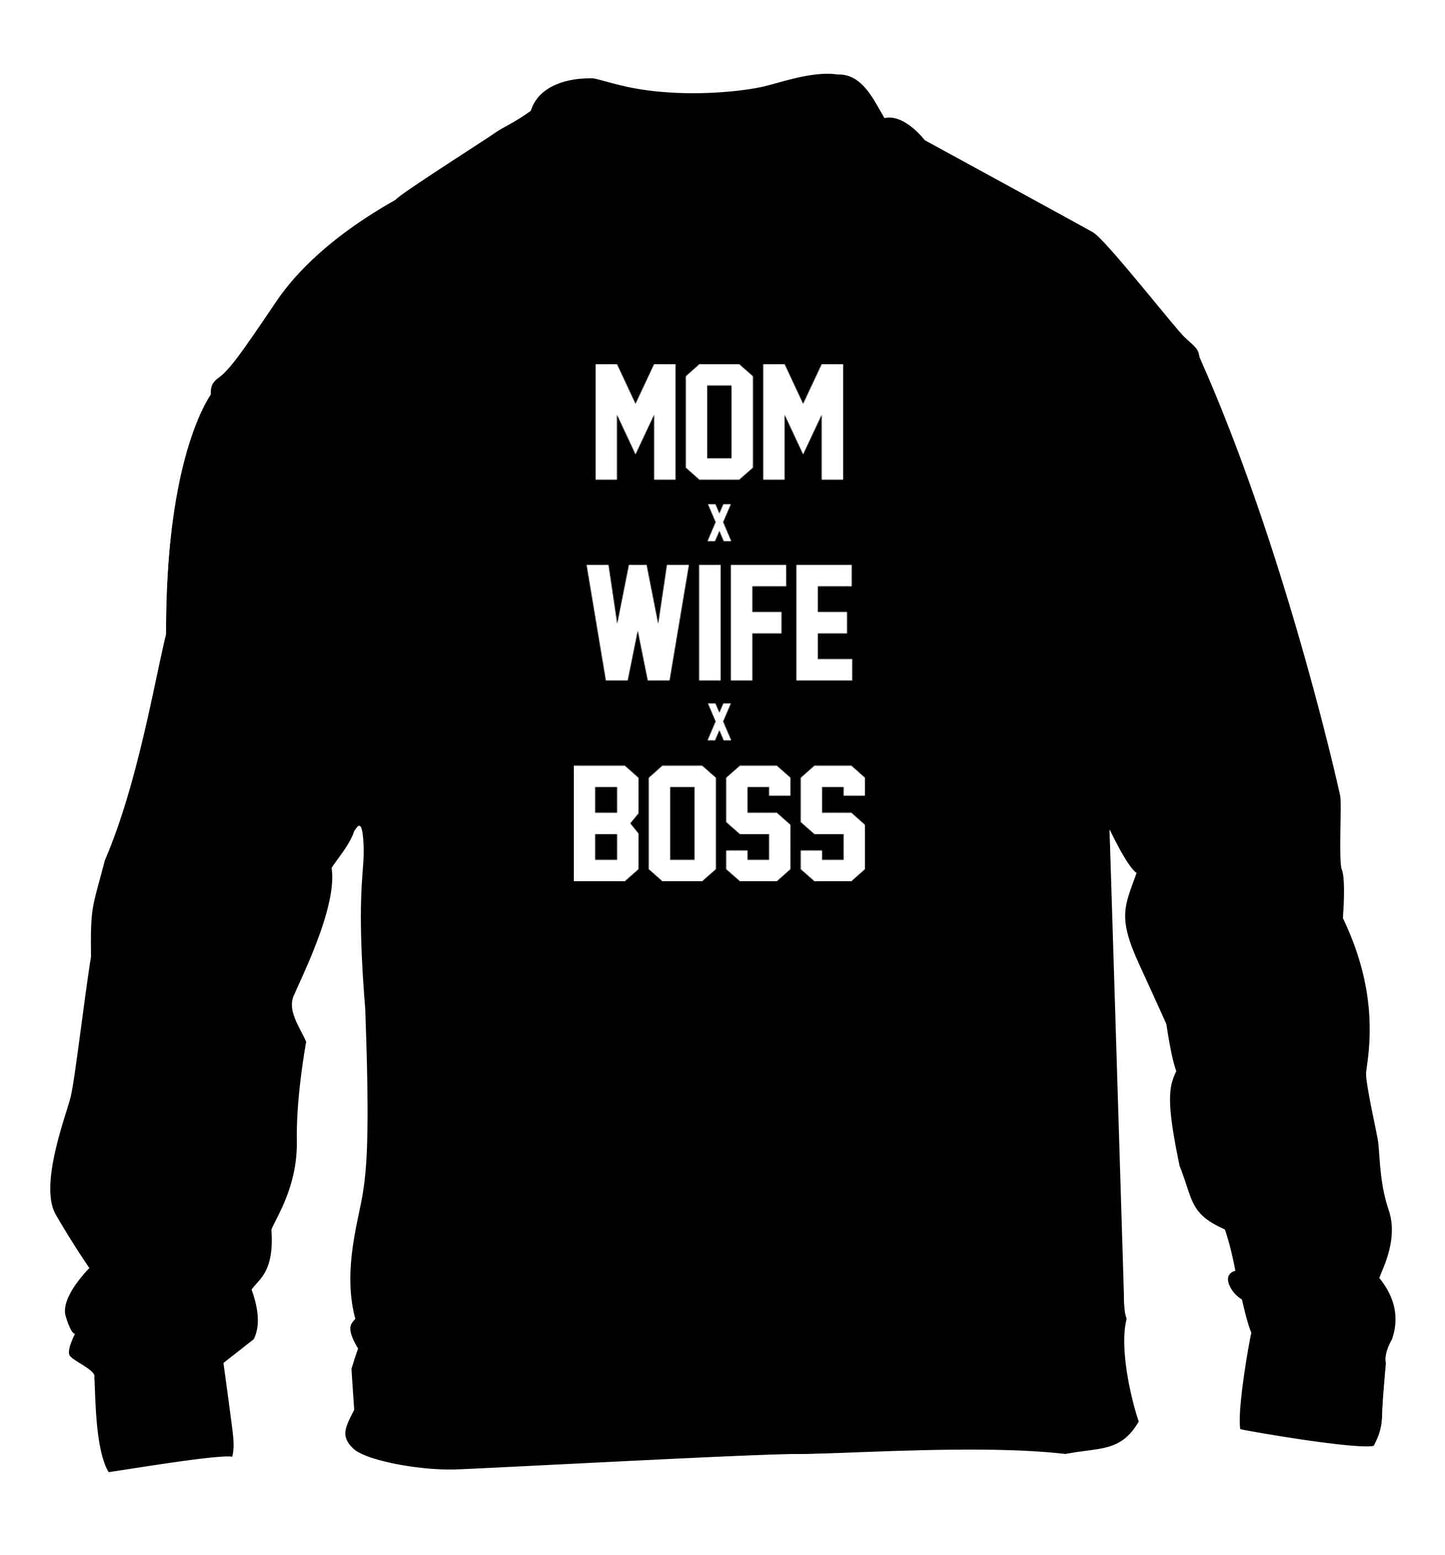 Mum wife boss children's black sweater 12-13 Years